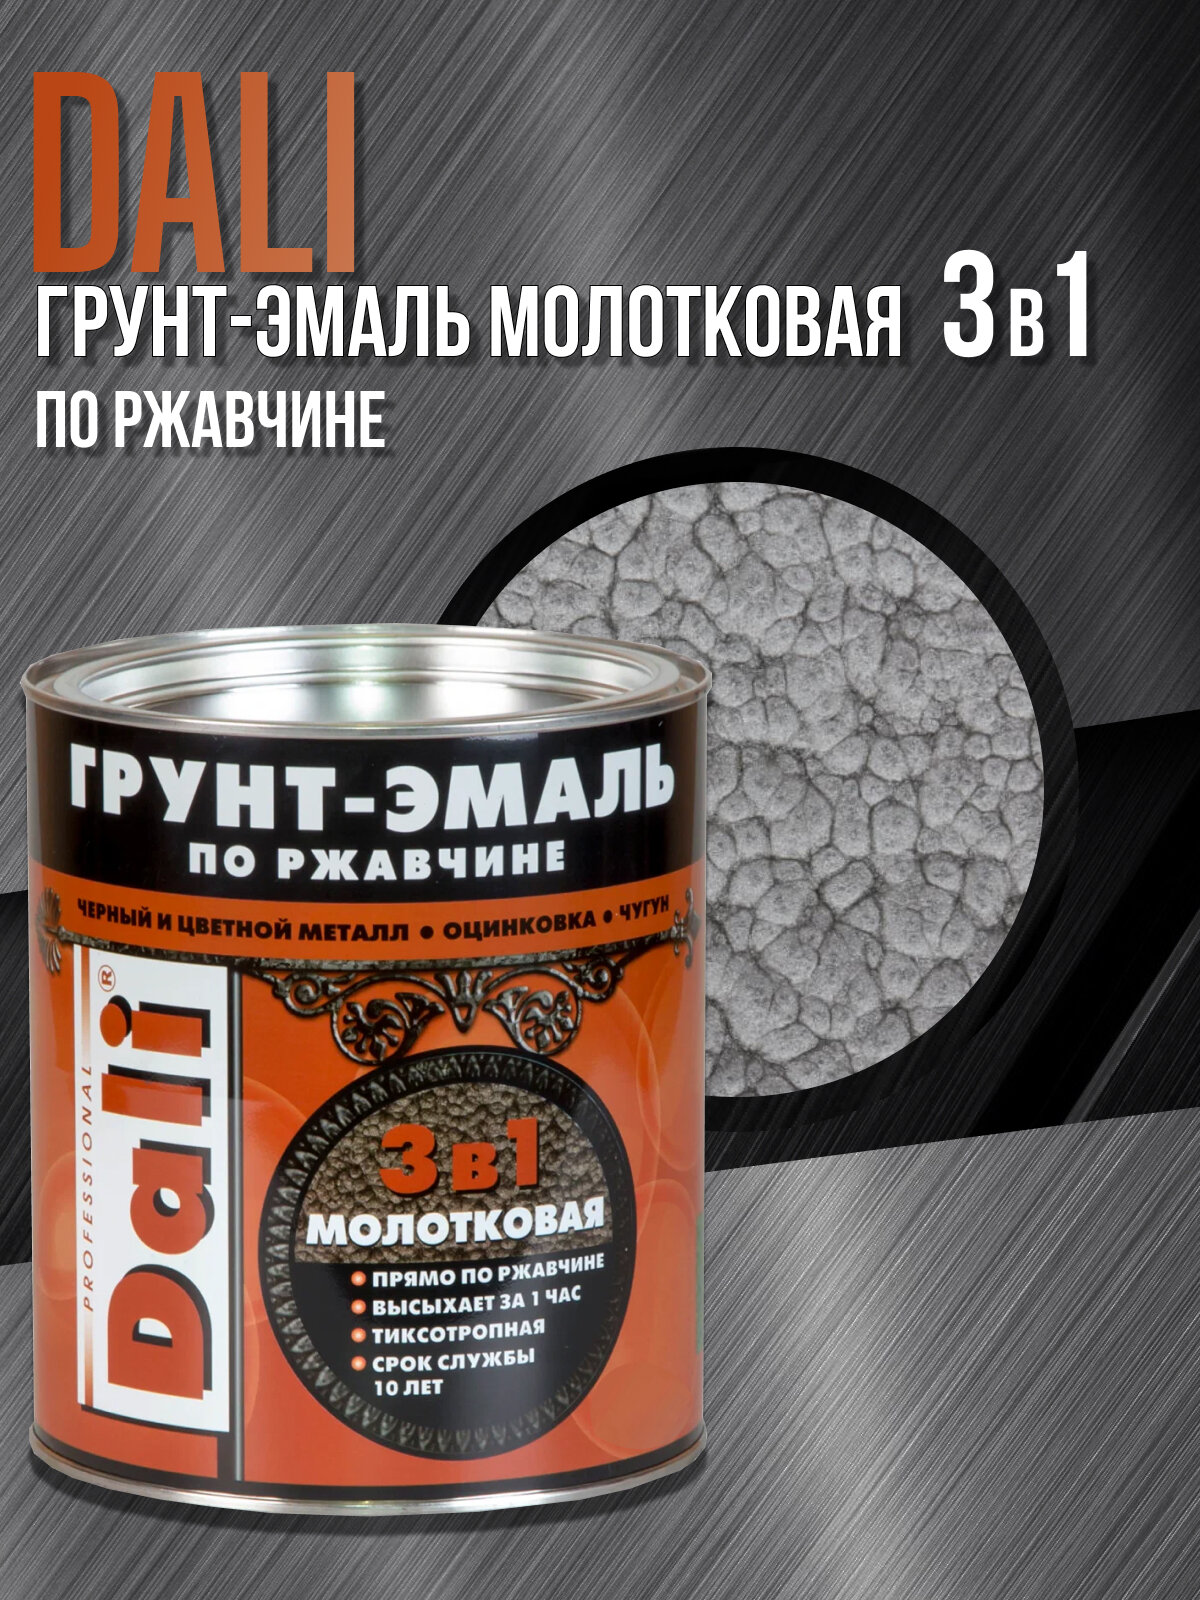 DALI "Молотковая алкидная грунт-эмаль 3 в 1", объем 0.75 литра, серебристая